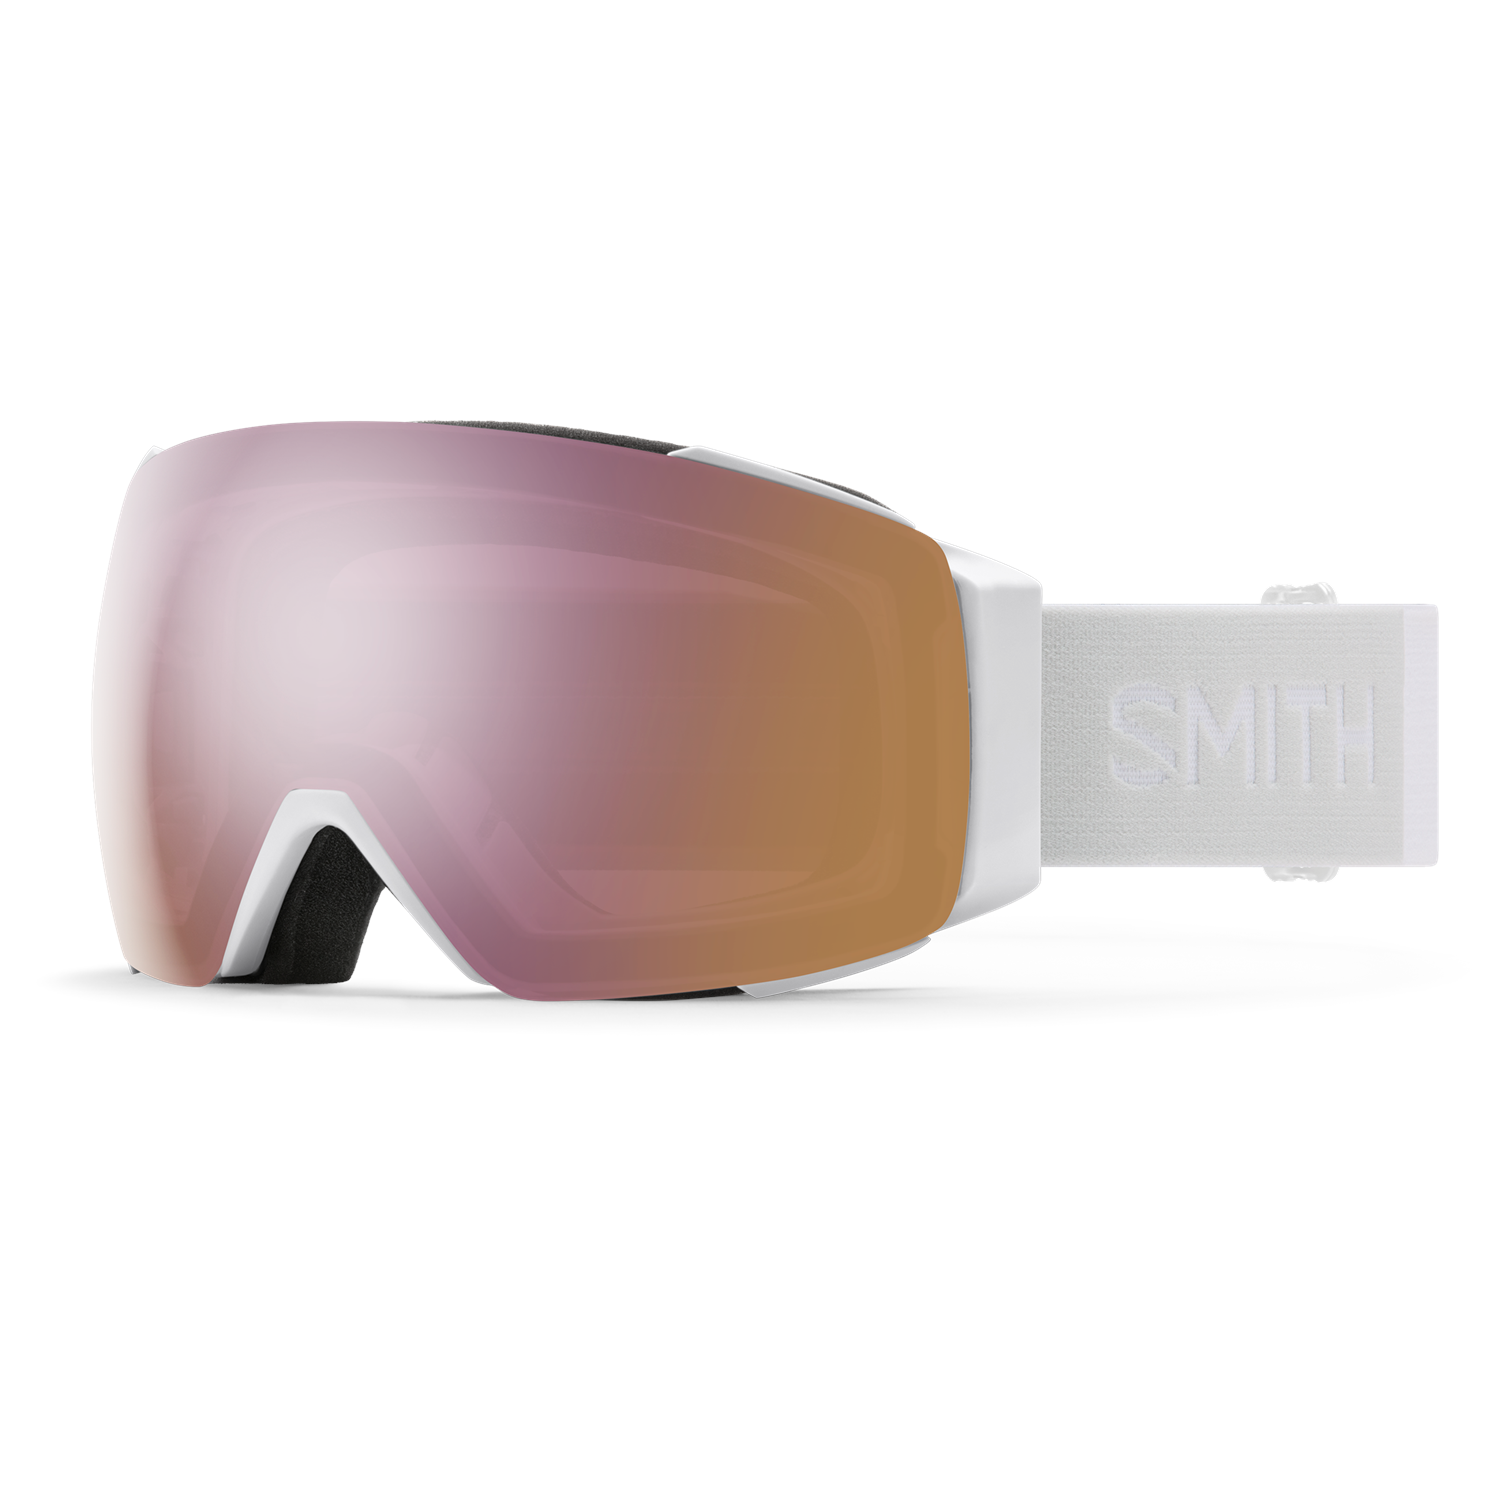 Smith I/O MAG Asian Fit Goggles | evo